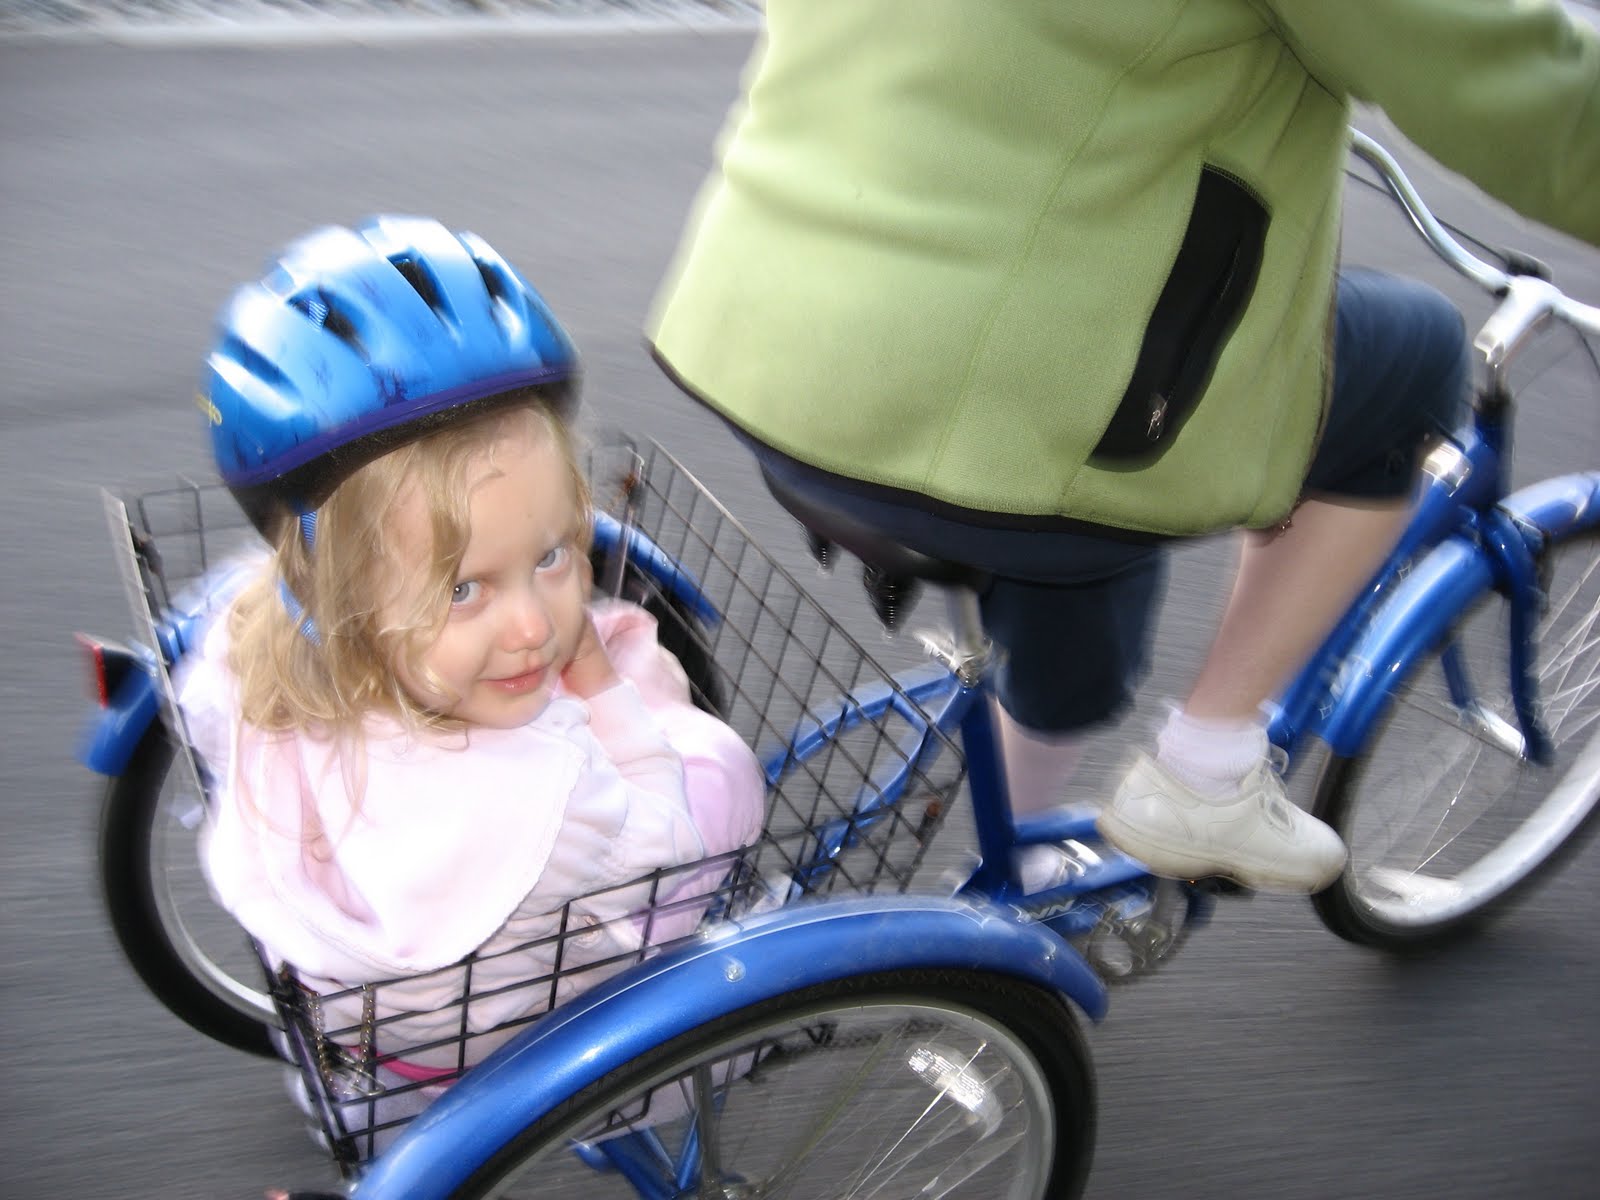 [bike+ride-+Abigail+in+basket+2.jpg]